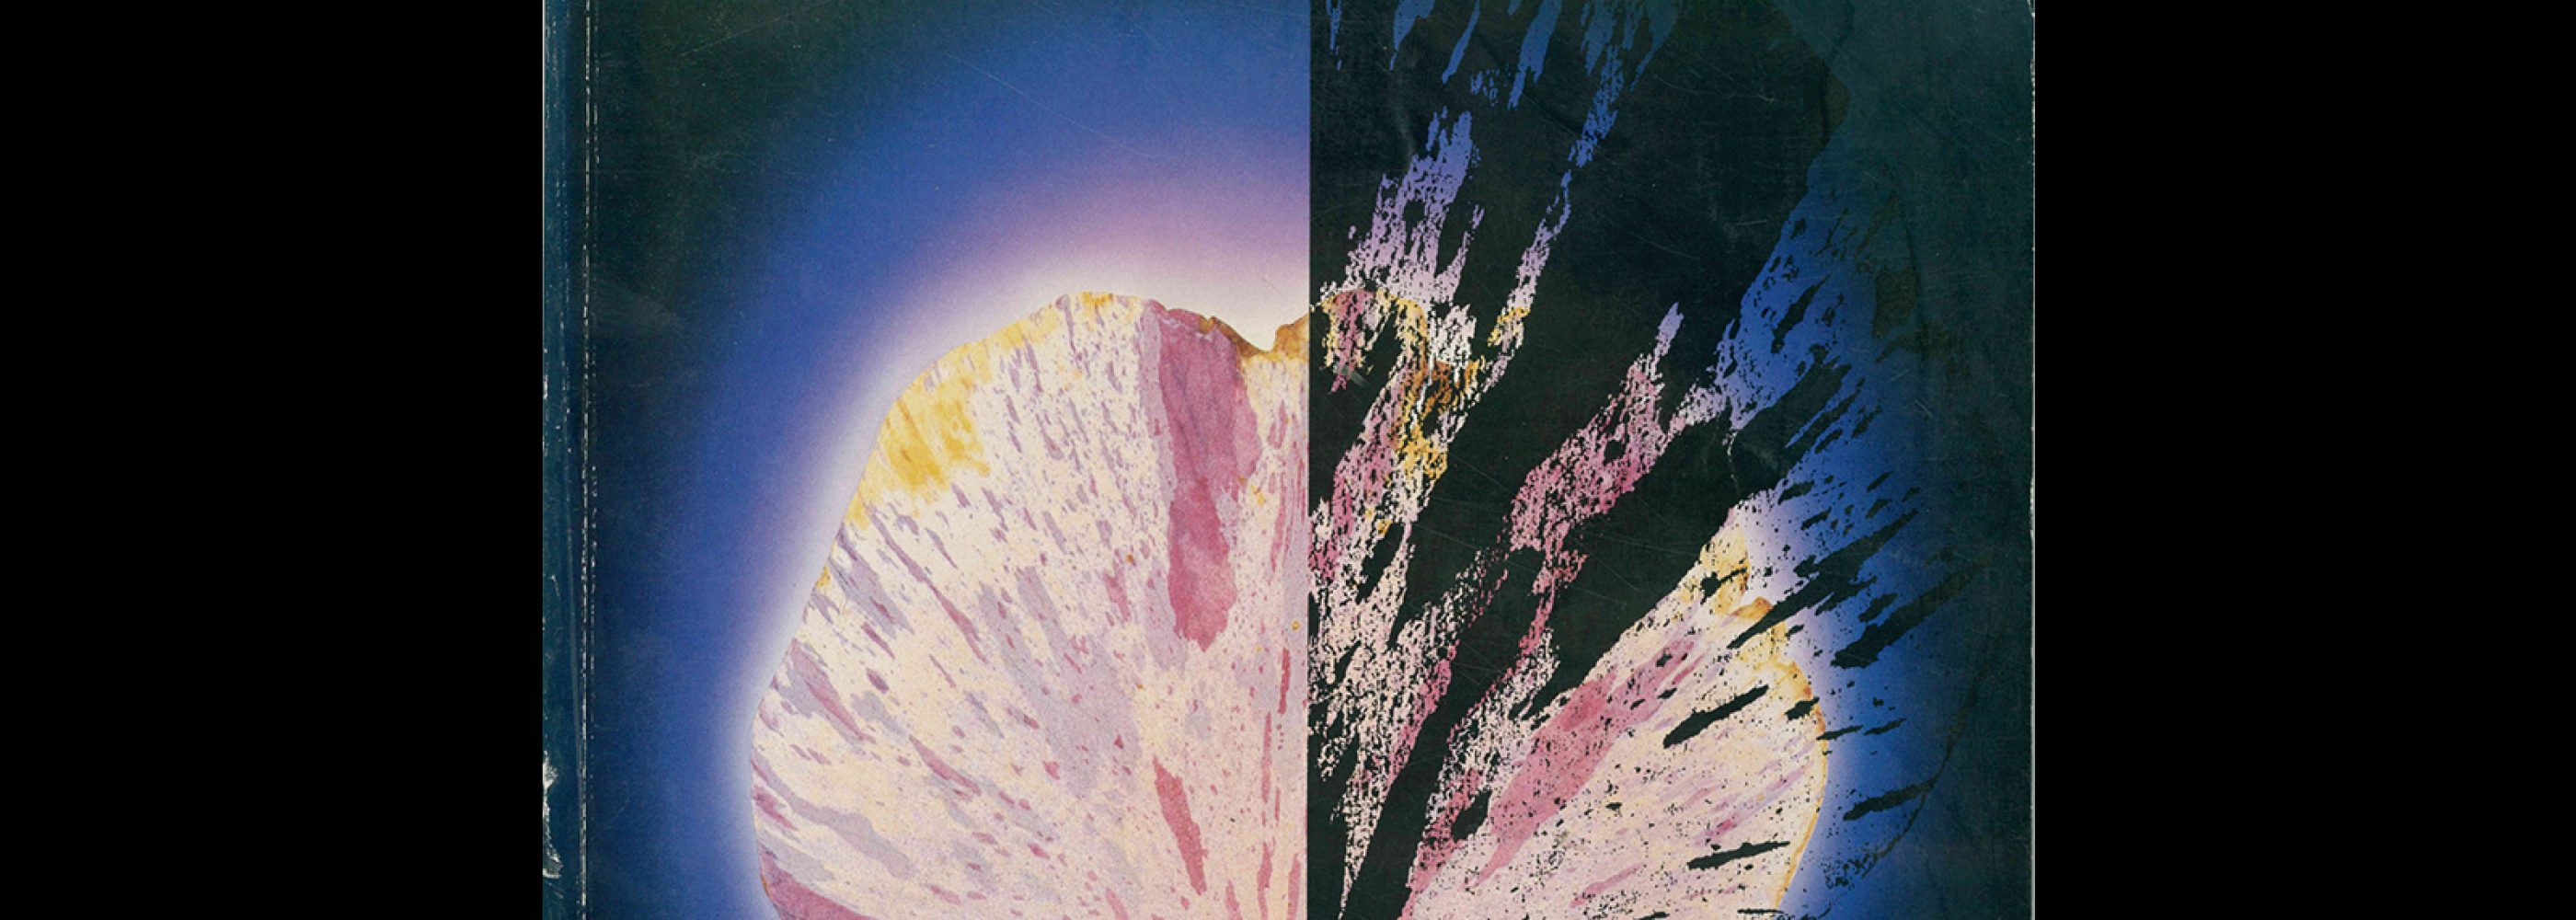 Idea 214, 1989-5. Cover design by Koichi Sato